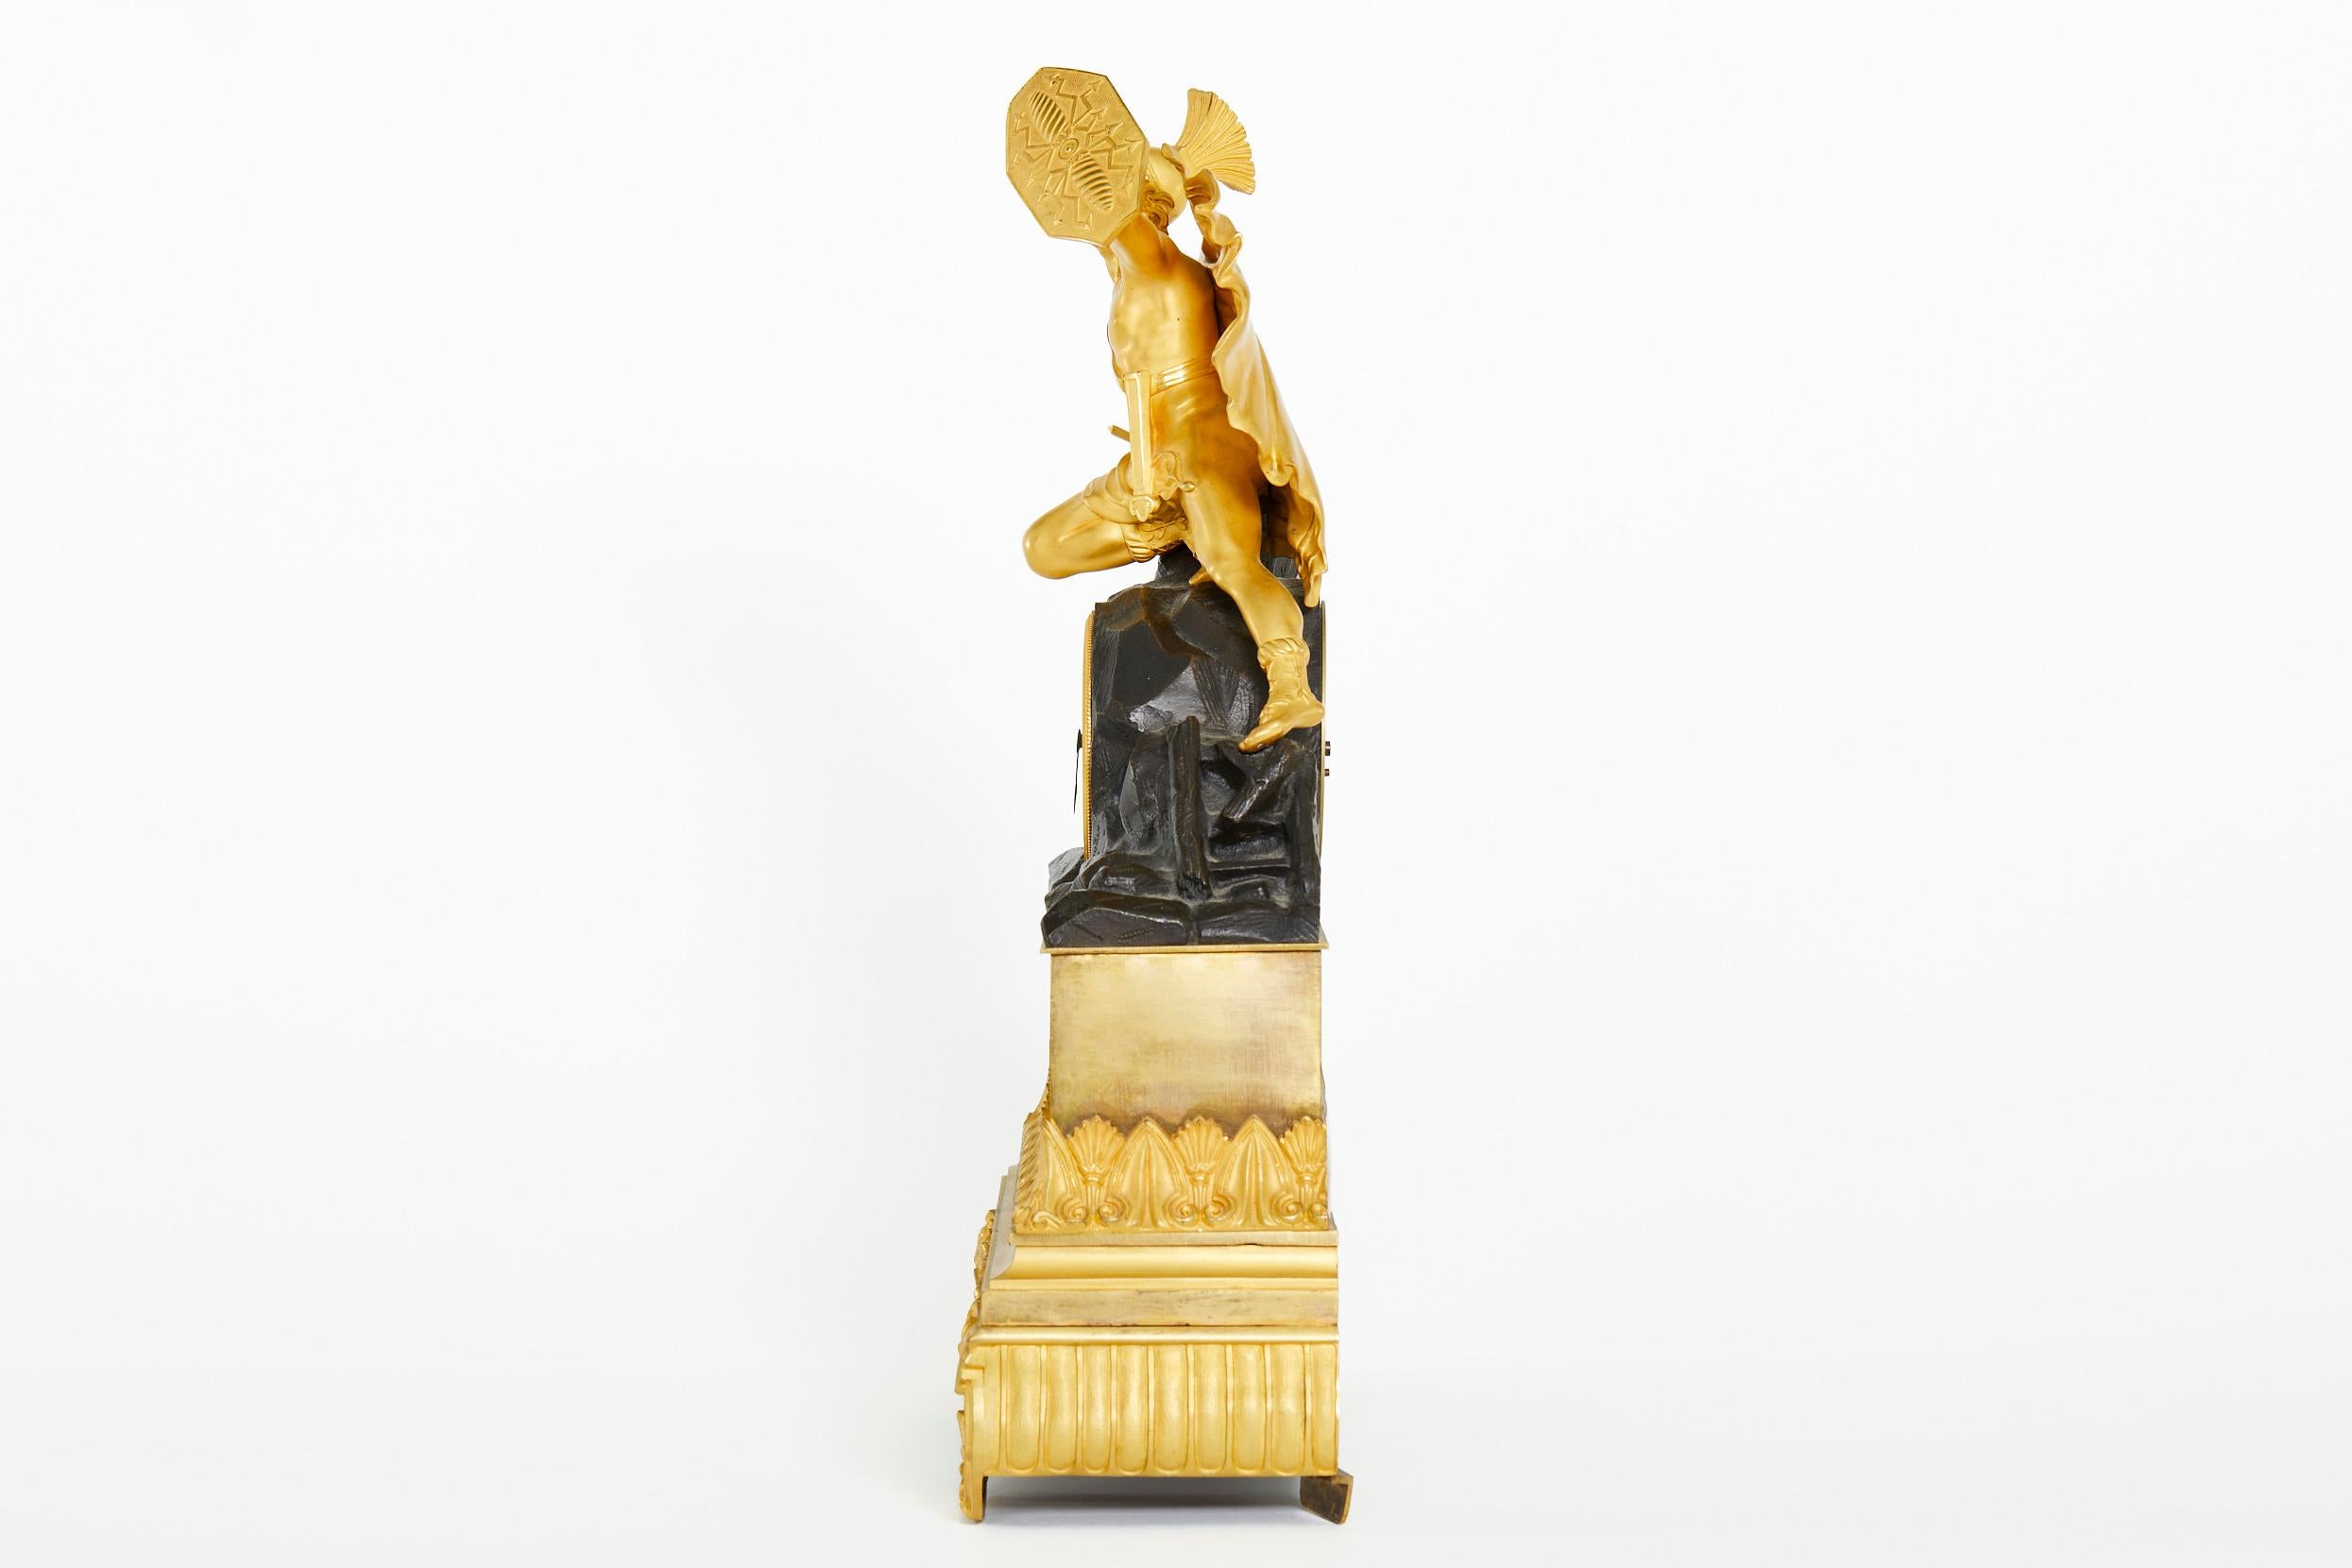 Anfang des 19. Jahrhunderts Charles X Stil vergoldeter Bronze mit figuralem Design Detail Mantel Uhr. Die Uhr zeigt einen gekrönten Soldaten, der einen Schild hält. Acht-Tage-Messingwerk mit Federantrieb, Glockenschlag und Seidenfadenaufhängung. Die